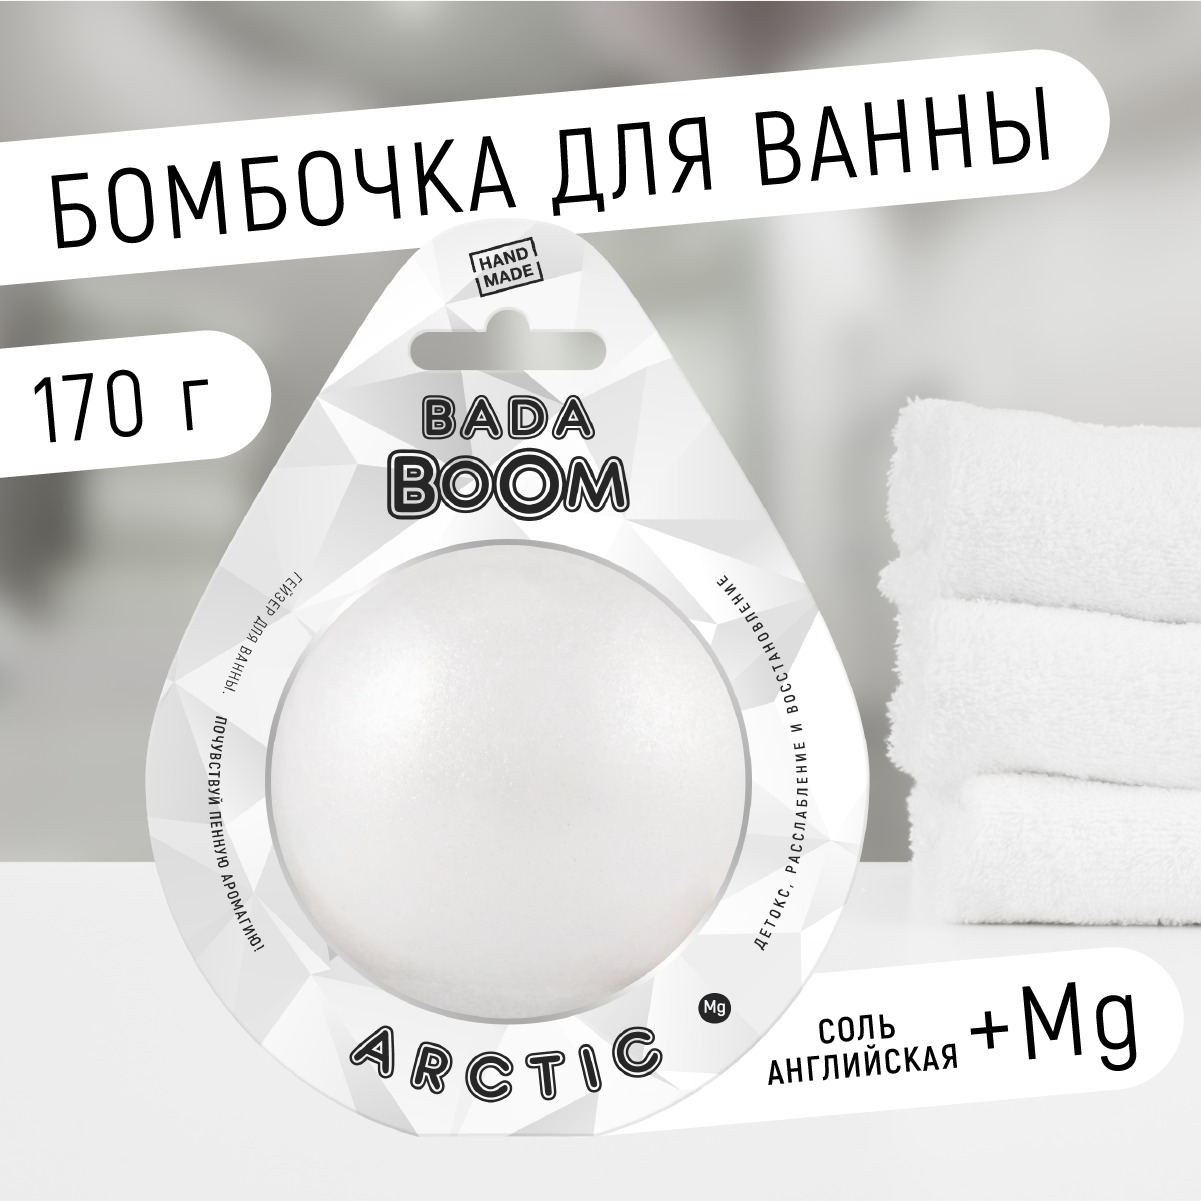 Бомбочка для ванны Arctic без запаха 170 г beauty fox расслабляющая соль для ванны время думать о себе 370